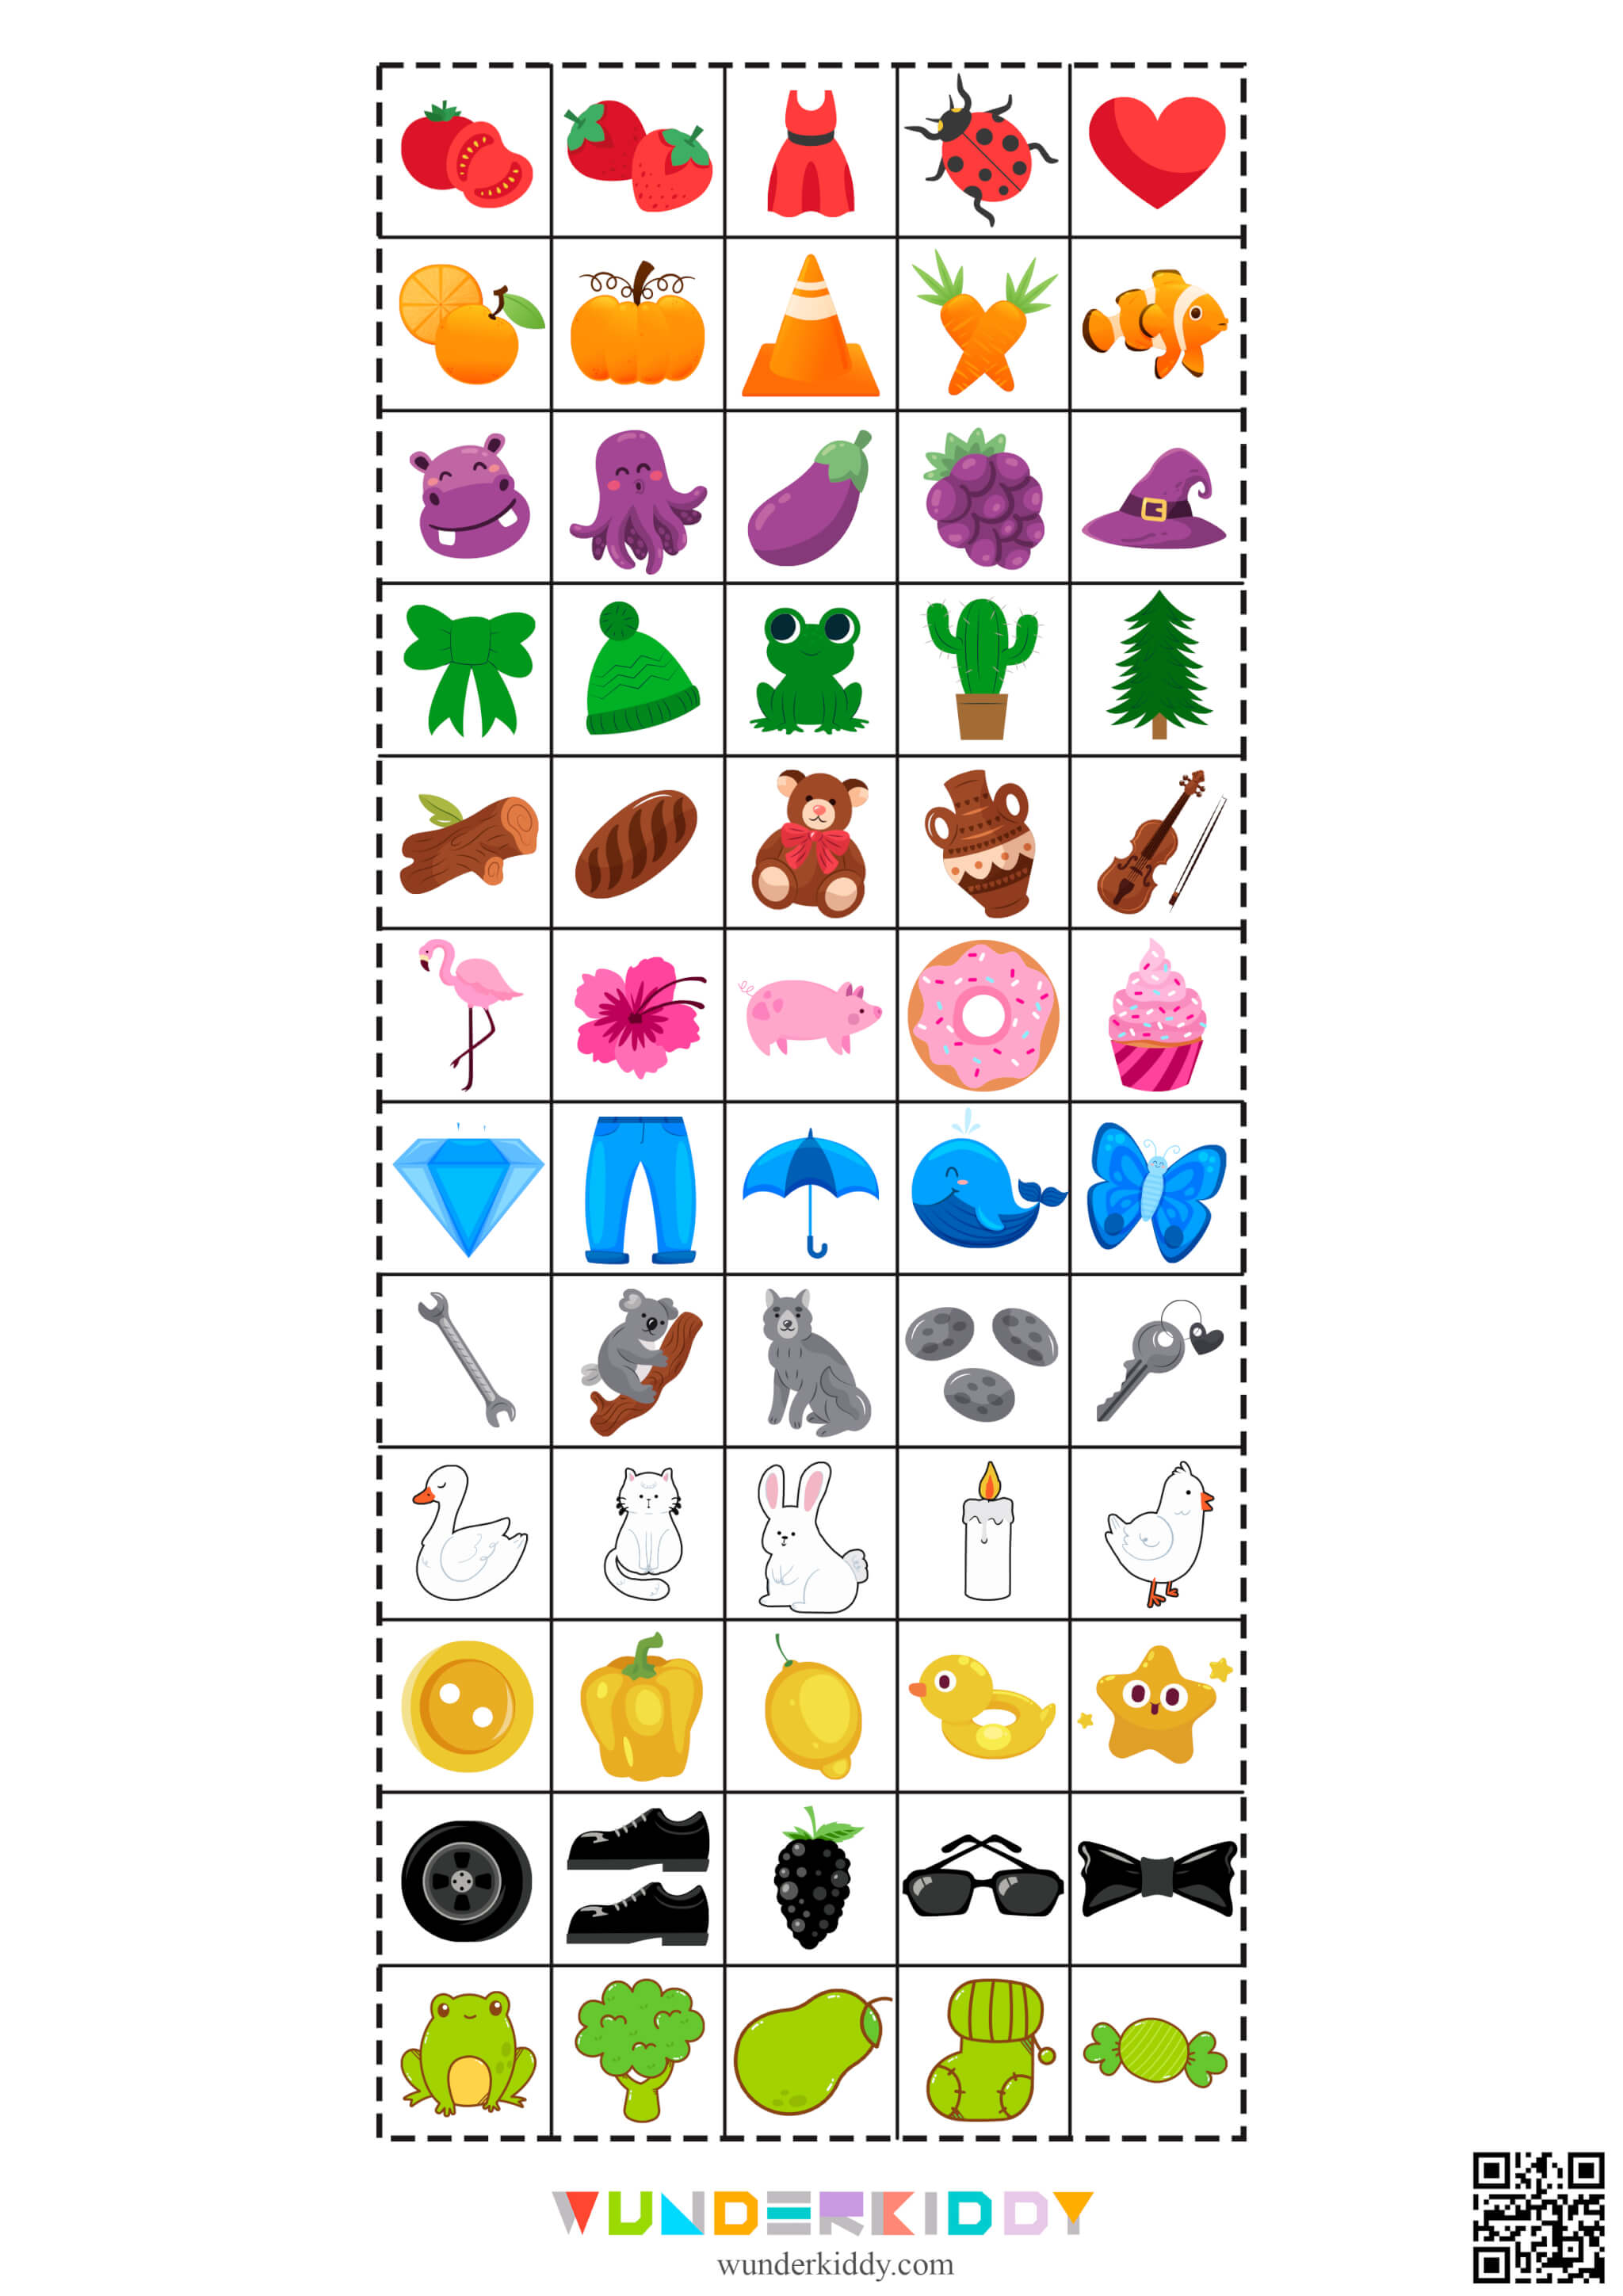 Color Sorting Worksheet for Kids - Image 2